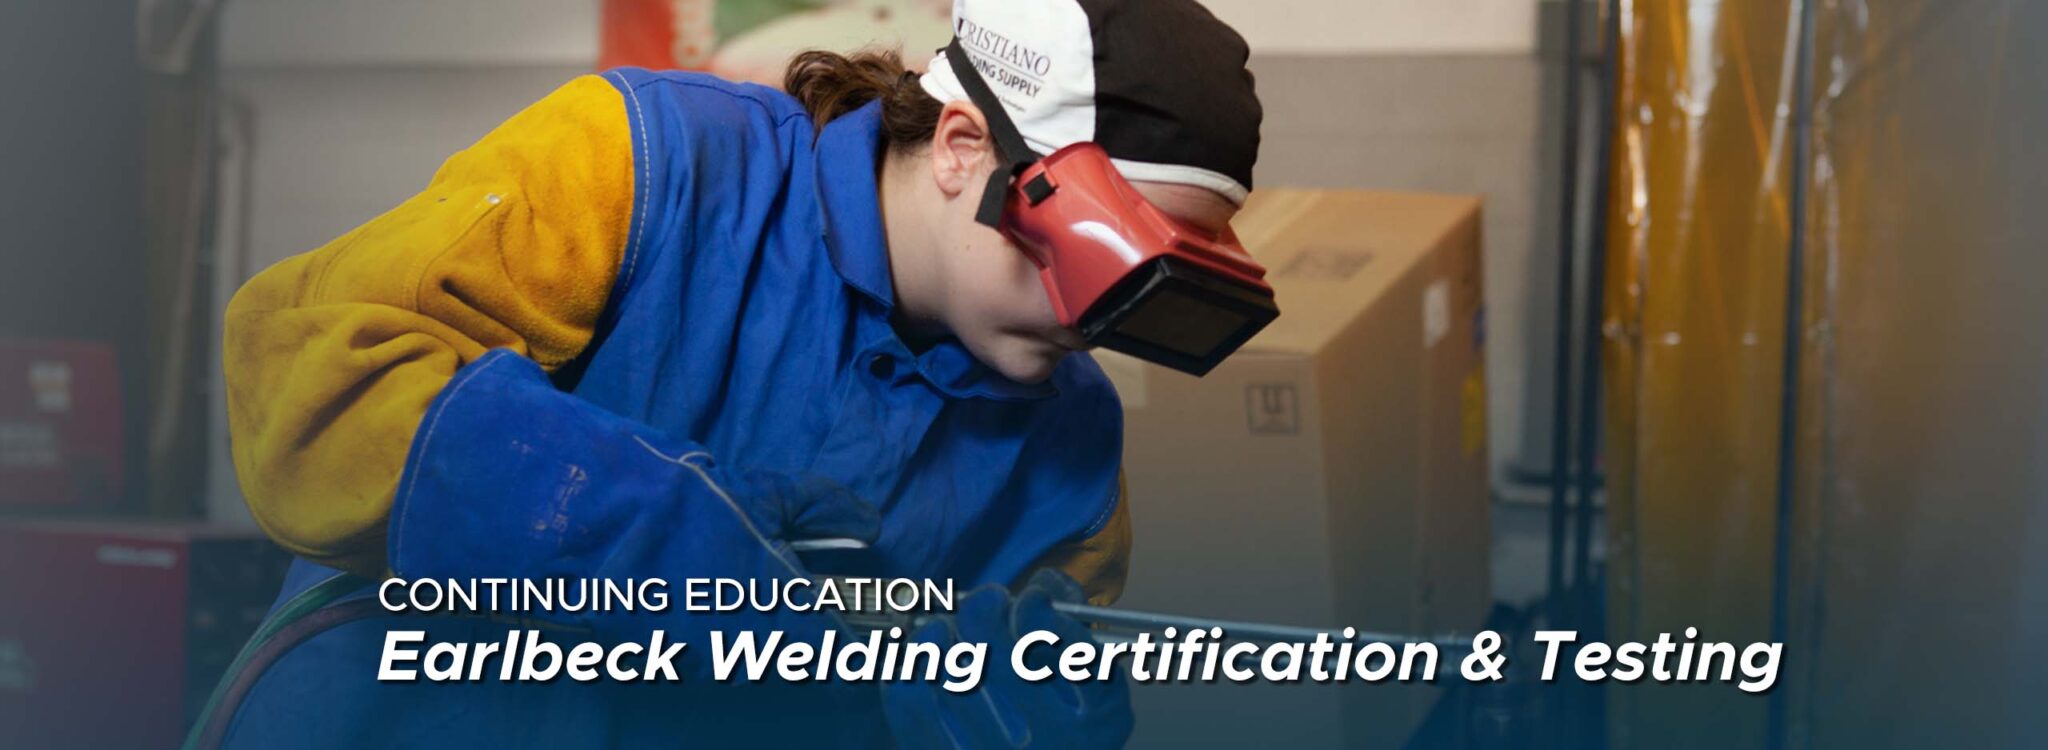 Earlbeck Welding Certification & Testing